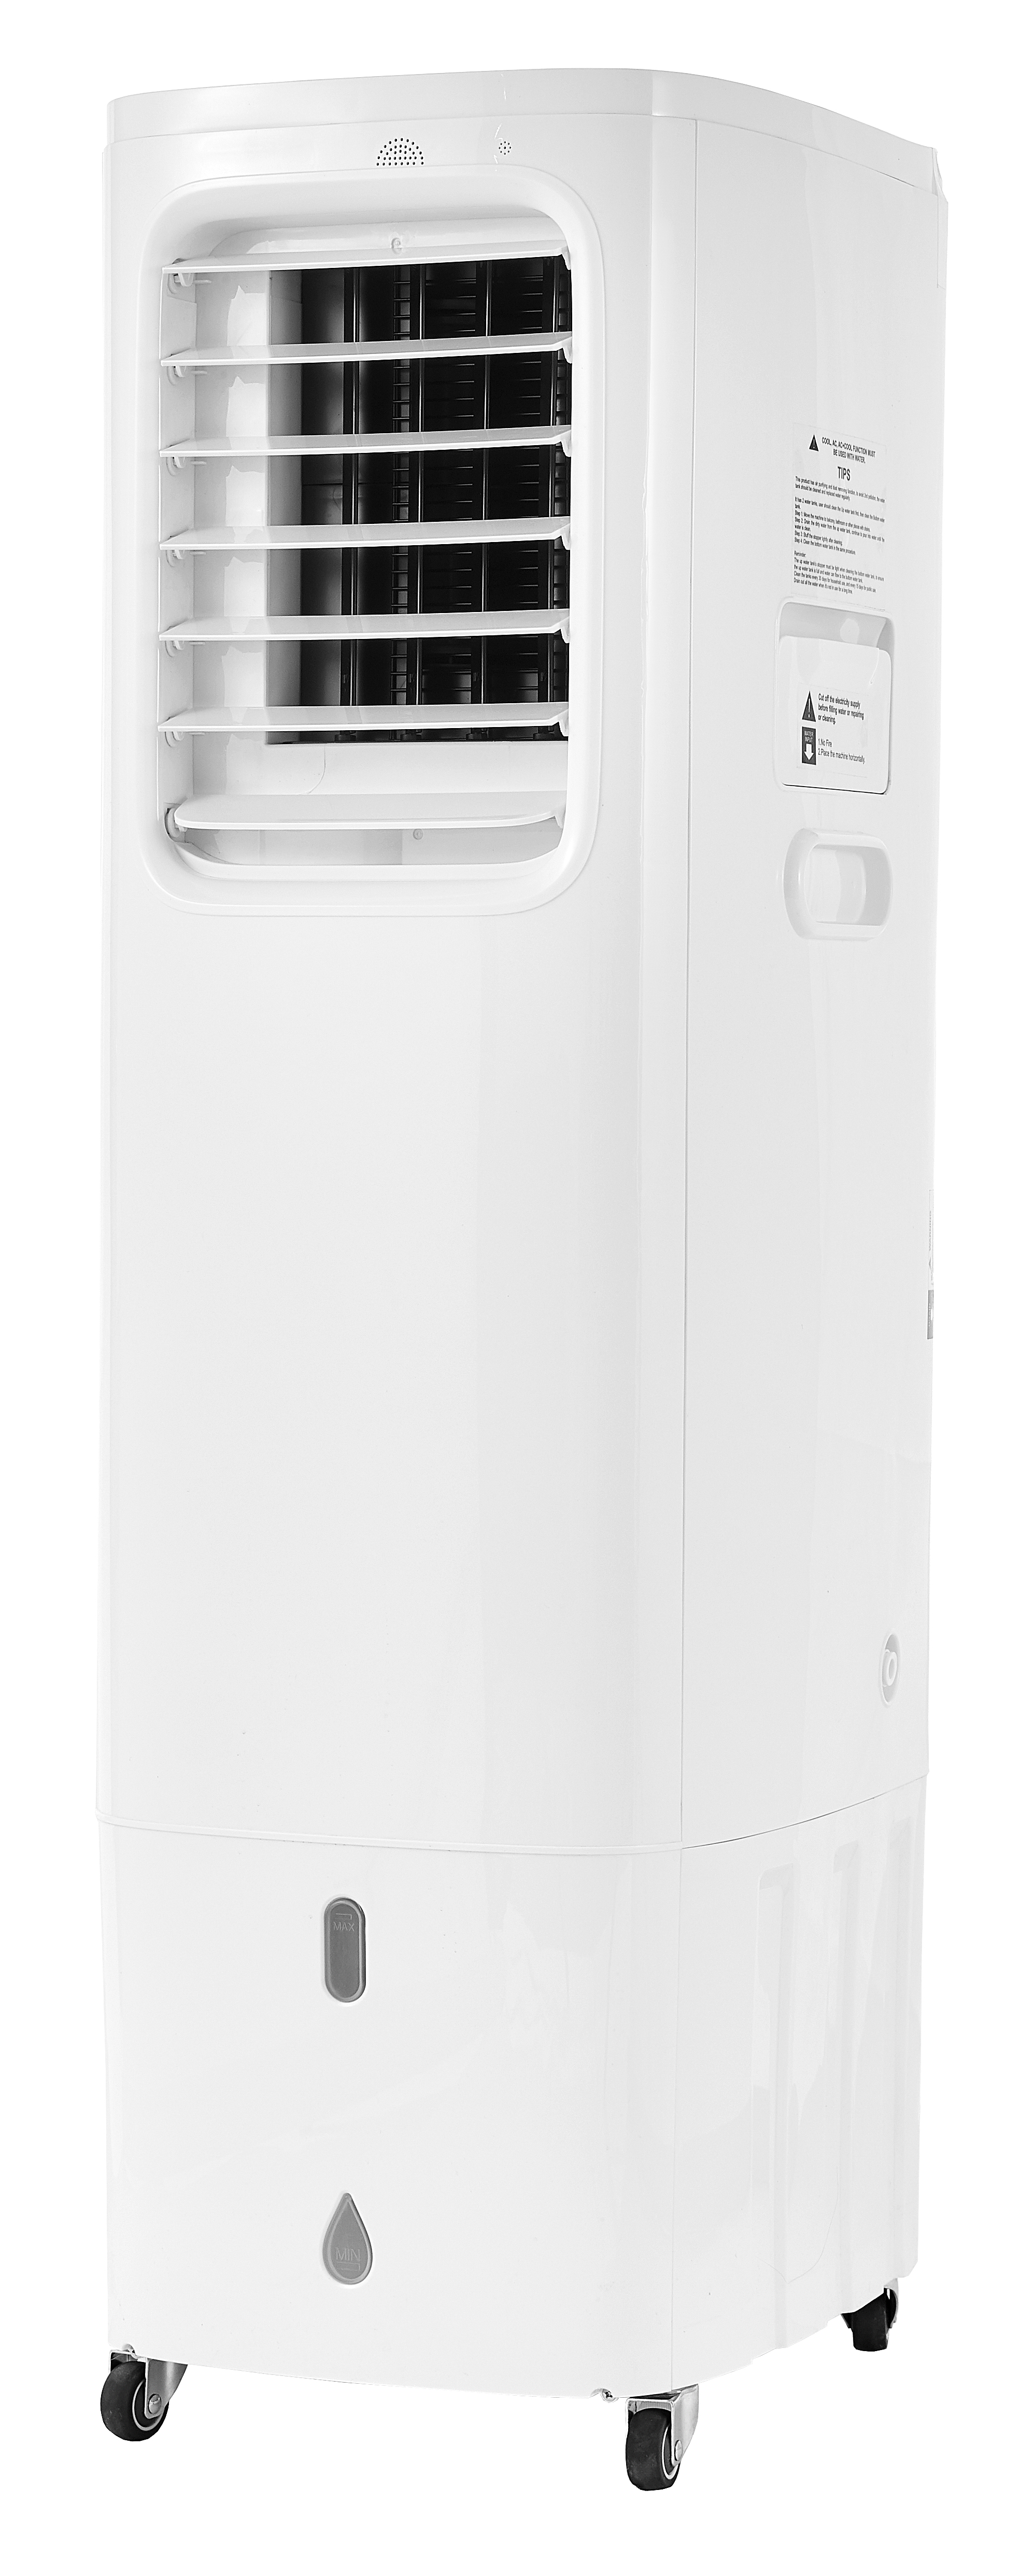 Zentralisierte Küchenwasserkühlungs-Klimaanlage, Strong Breeze Cool Tragbare Klimaanlage kombiniert Verdunstungsluftkühler